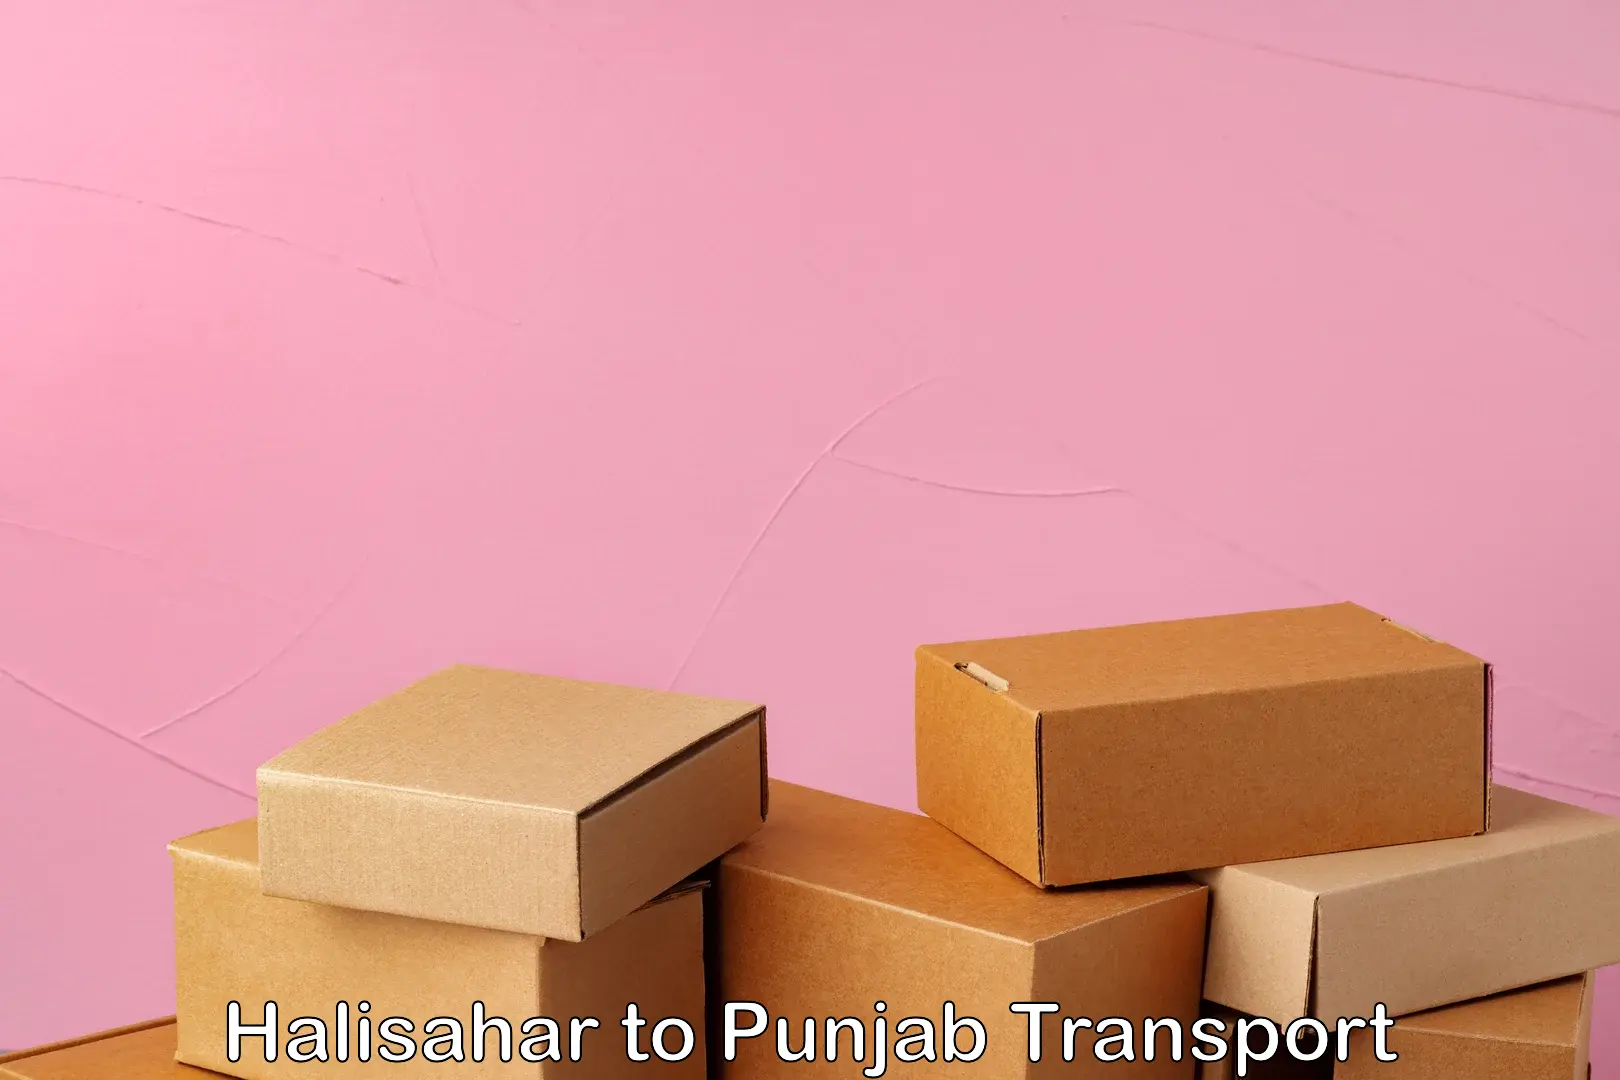 Nationwide transport services Halisahar to Jalandhar